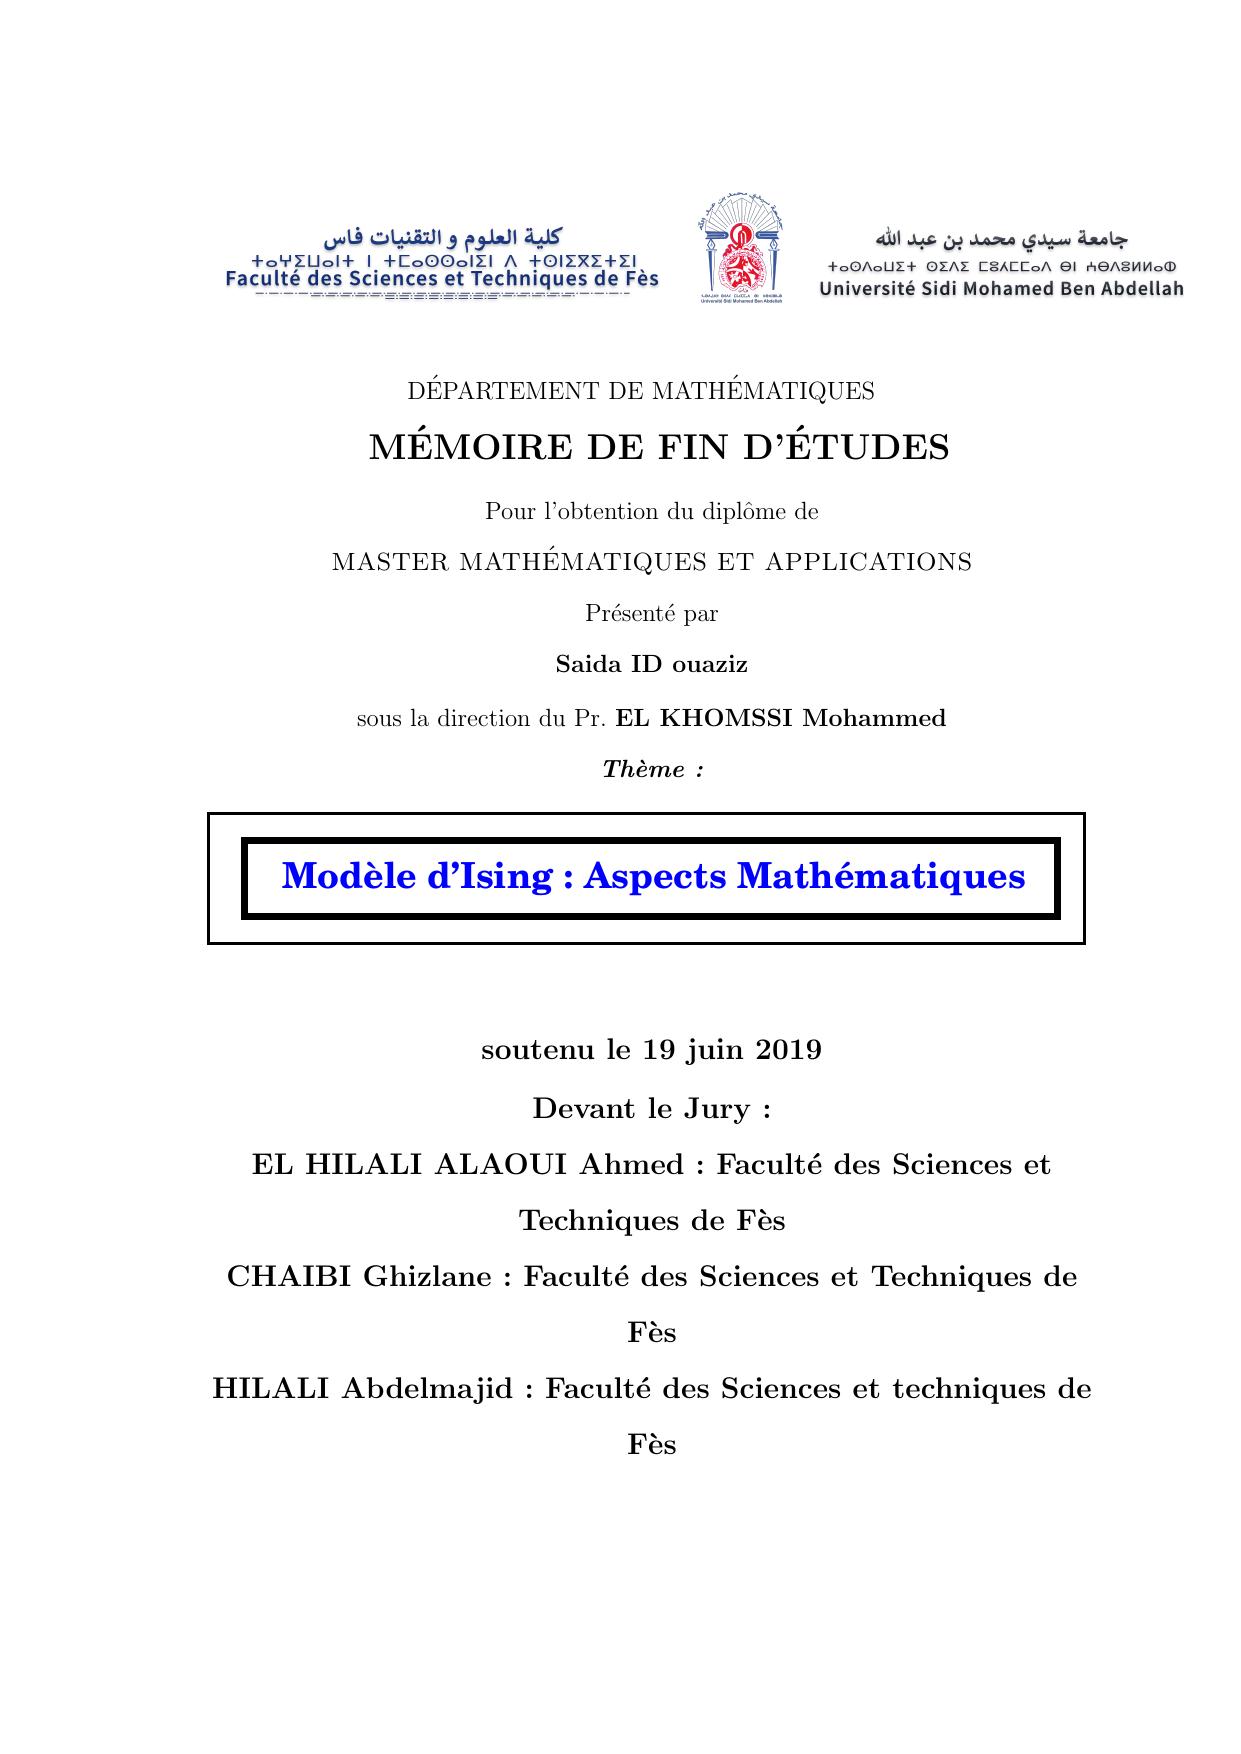 Modèle d'ISING: Aspects Mathématiques